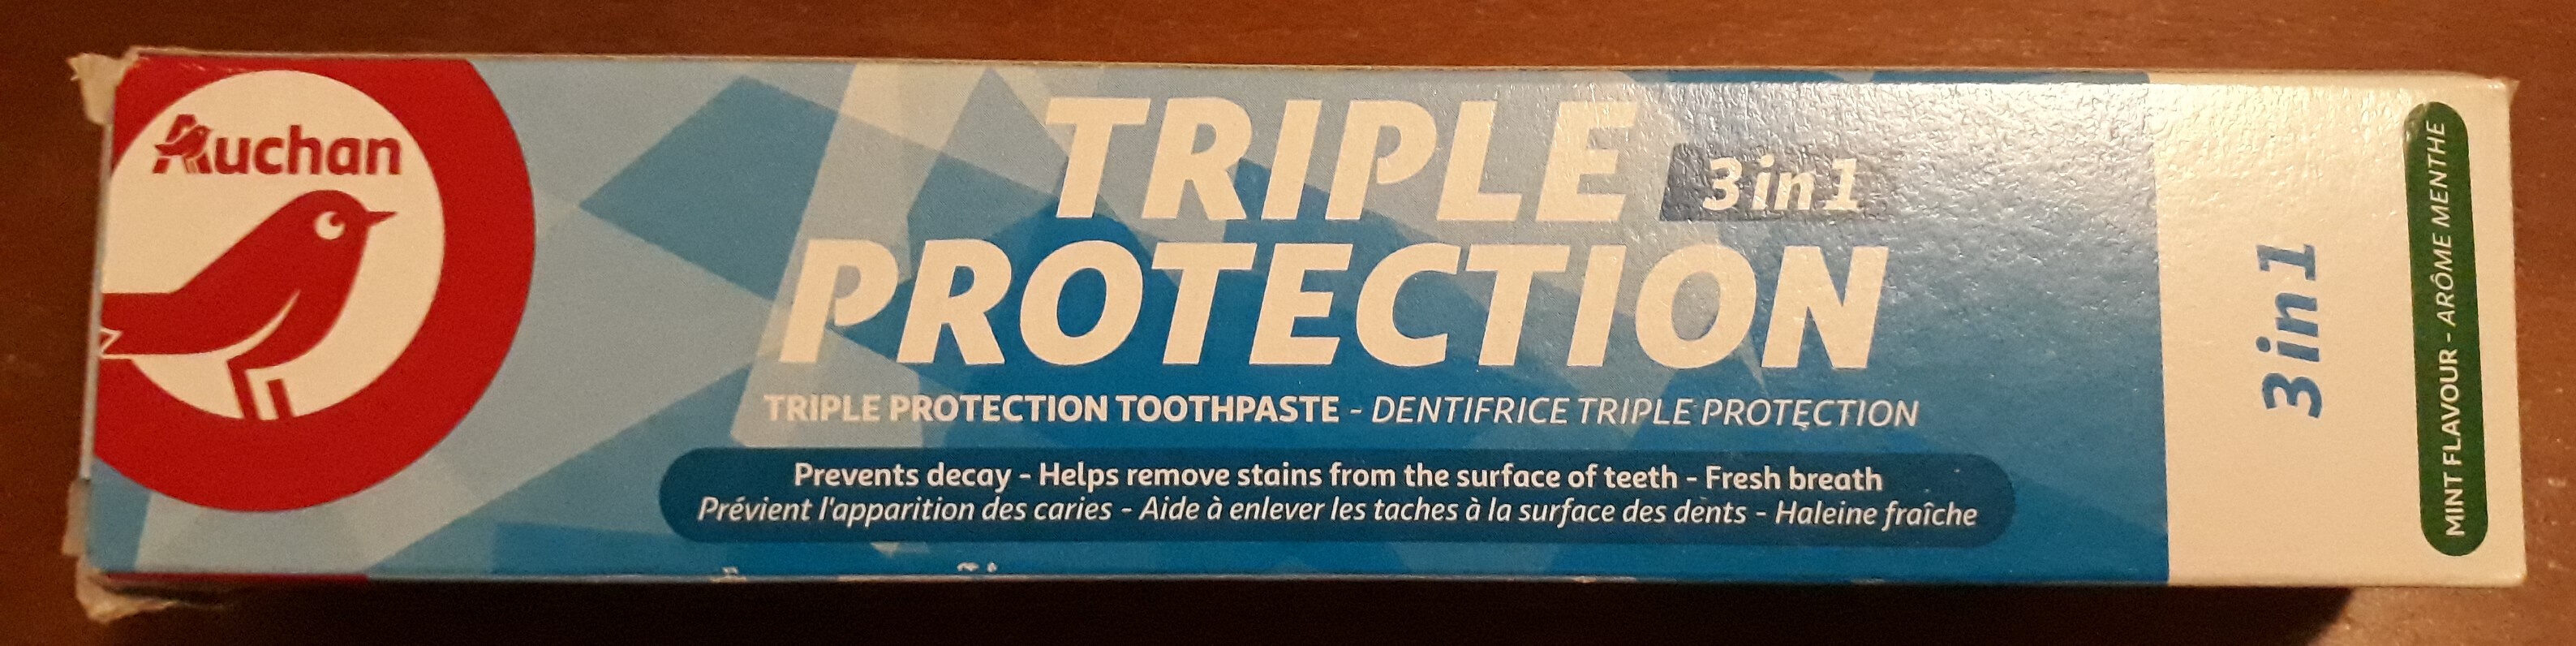 Dentifrice triple protection 3-en-1 à la menthe - Product - fr